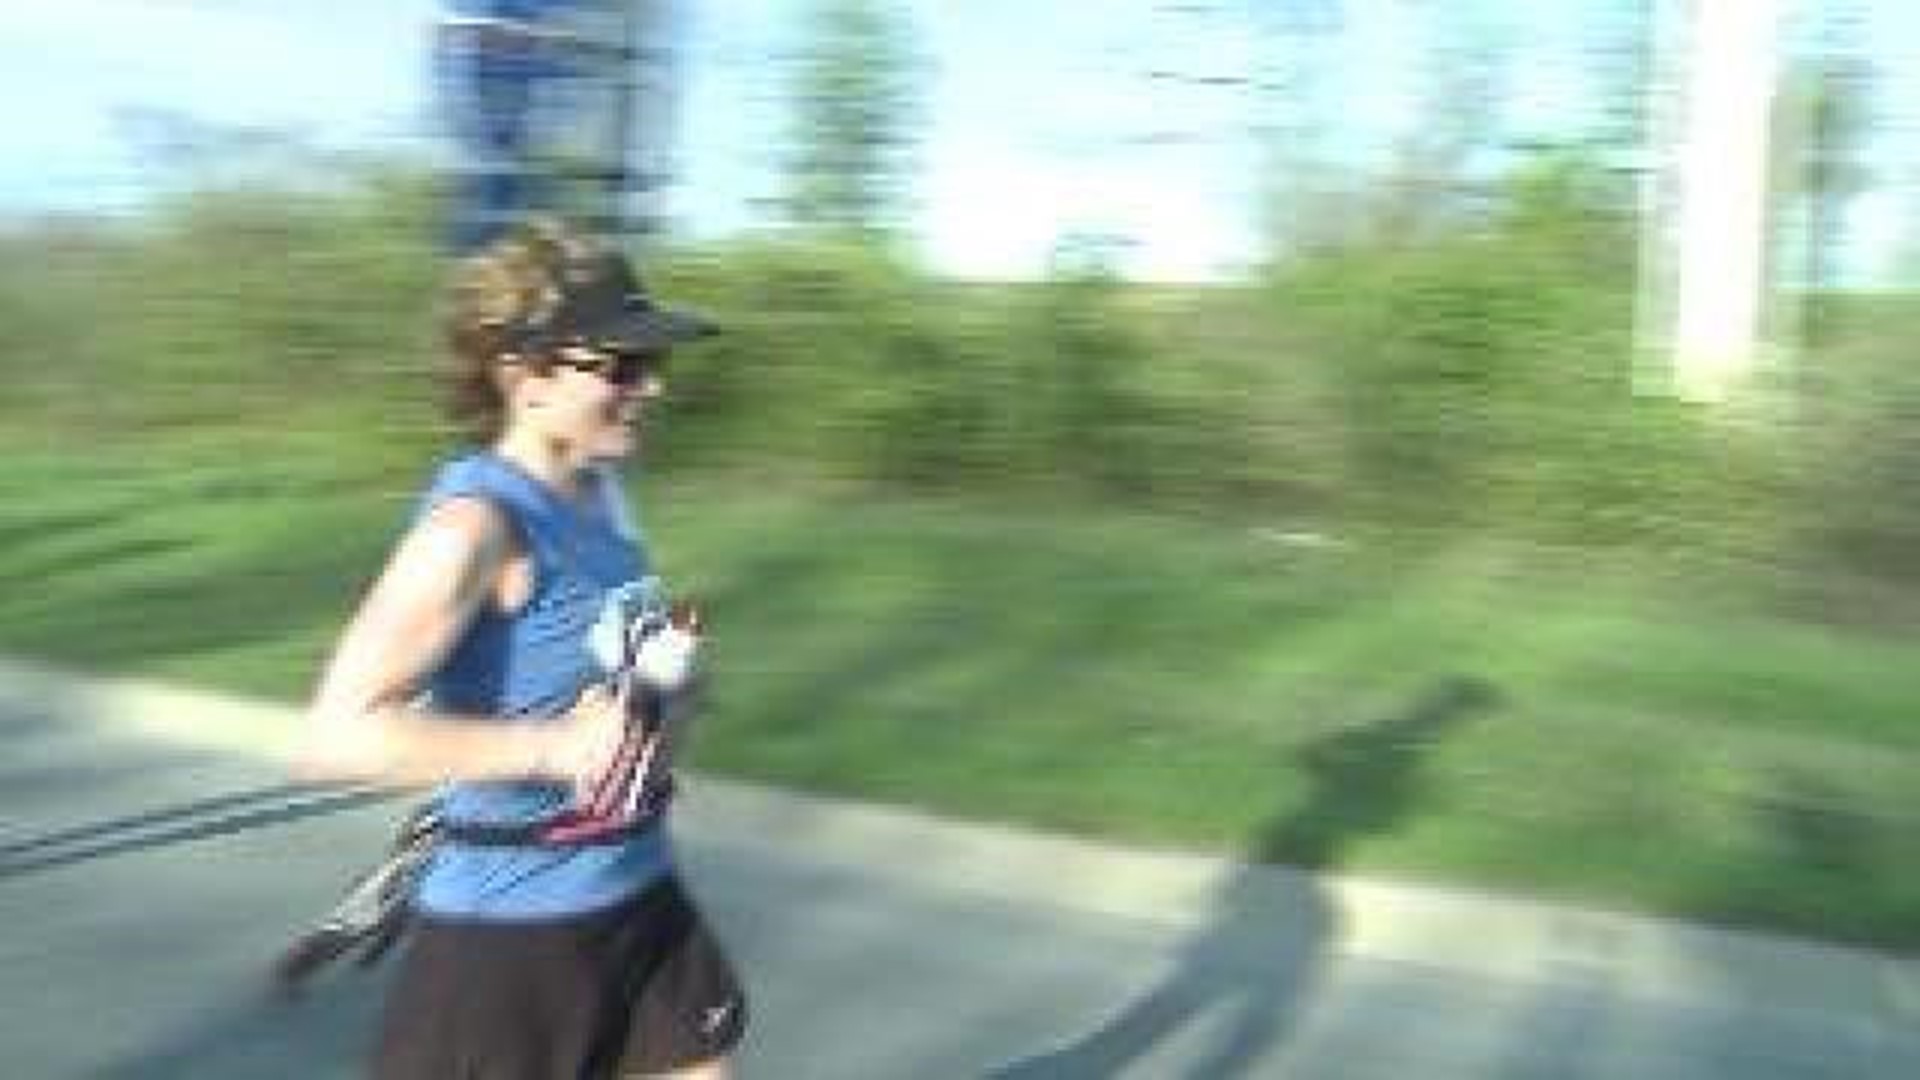 Hogeye Marathon Runner Completes her 100th Marathon